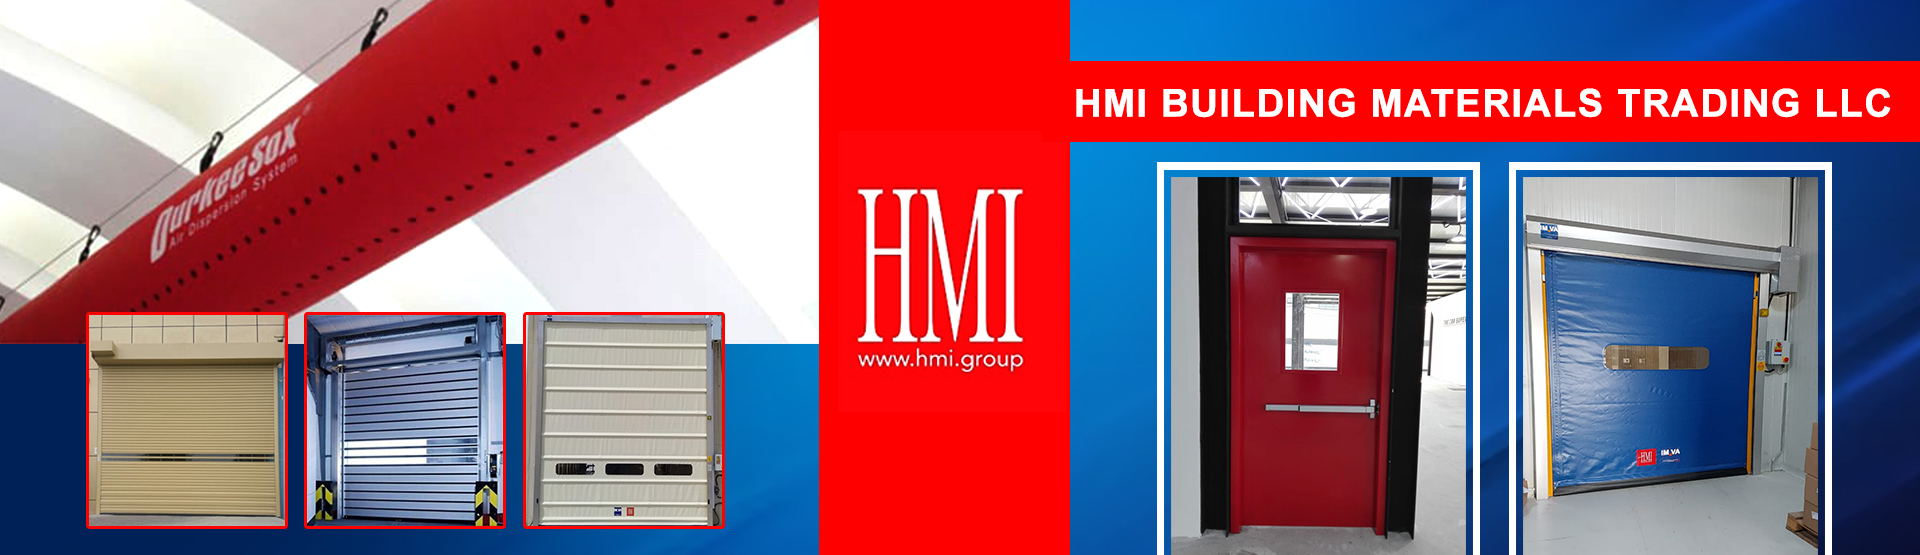 HMI BUILDING MATERIALS TRADING LLC